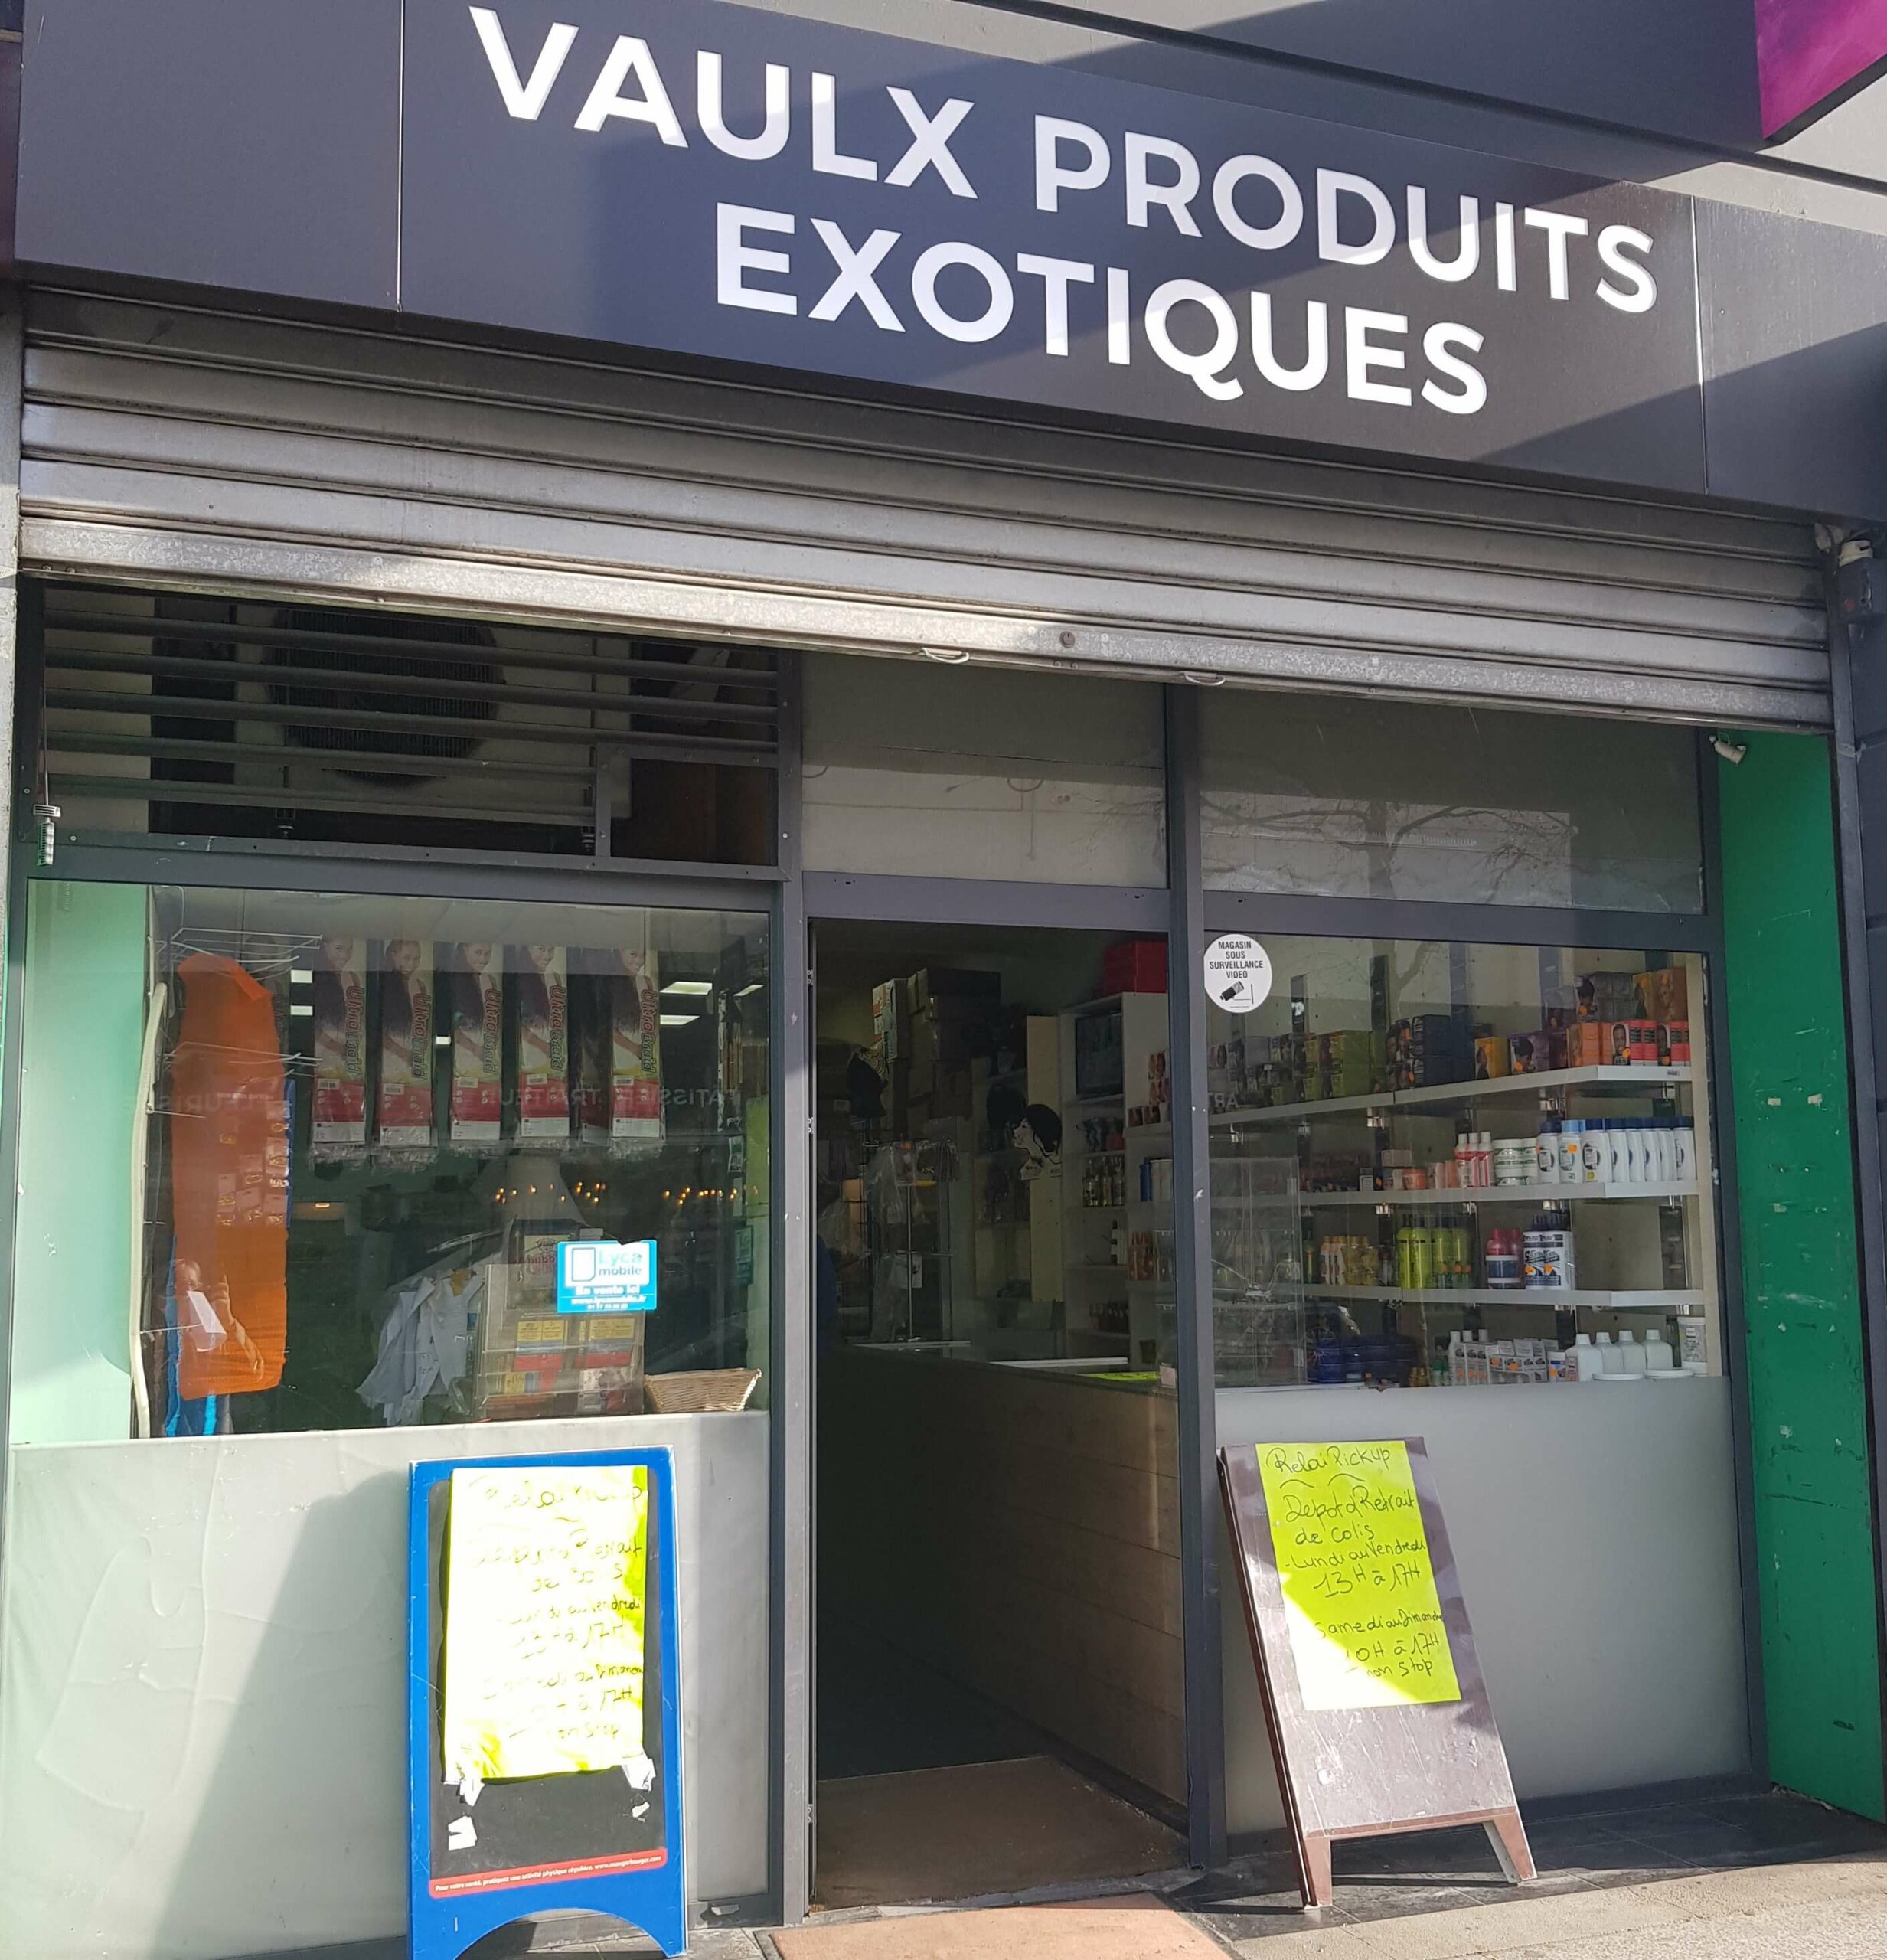 Vaulx Produits Exotiques